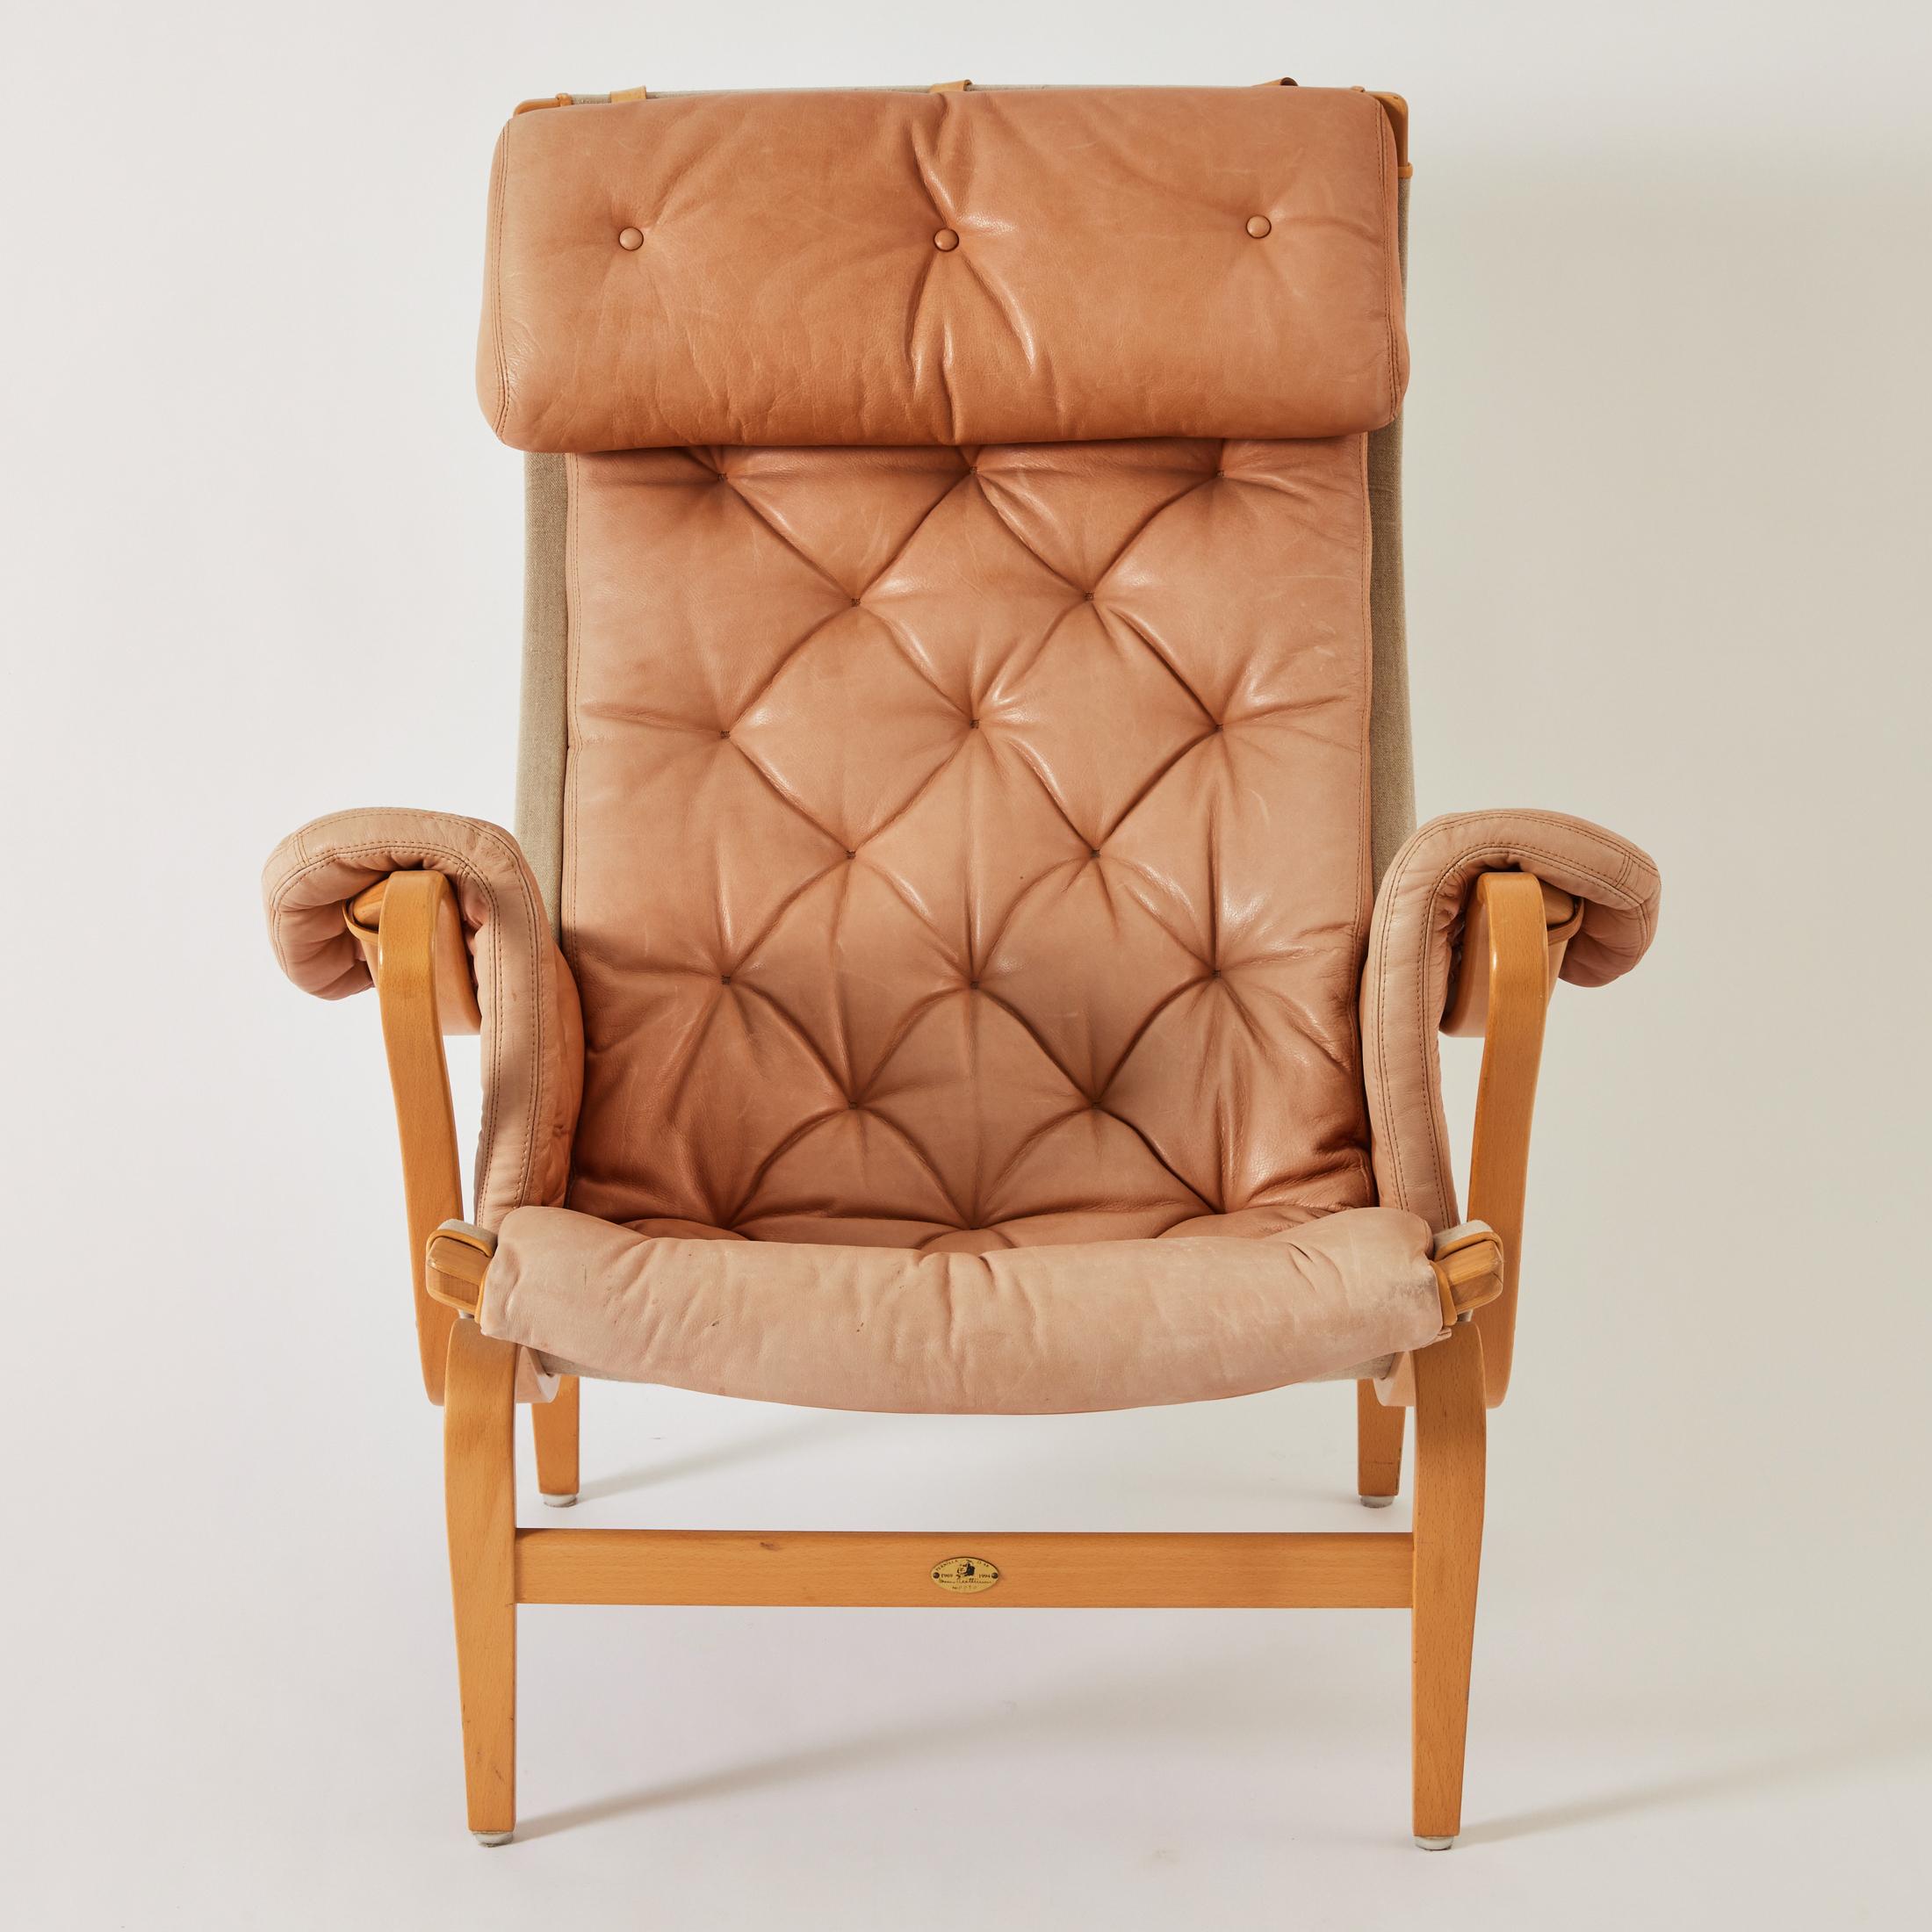 Chaise longue Pernilla 69 en cuir de Bruno Mathsson. Ce modèle particulier a été fabriqué dans le cadre de l'édition du 25e anniversaire en 1994. Le cuir a une belle couleur tonale et l'état est très bon. Le cadre incurvé est en bois de hêtre et la